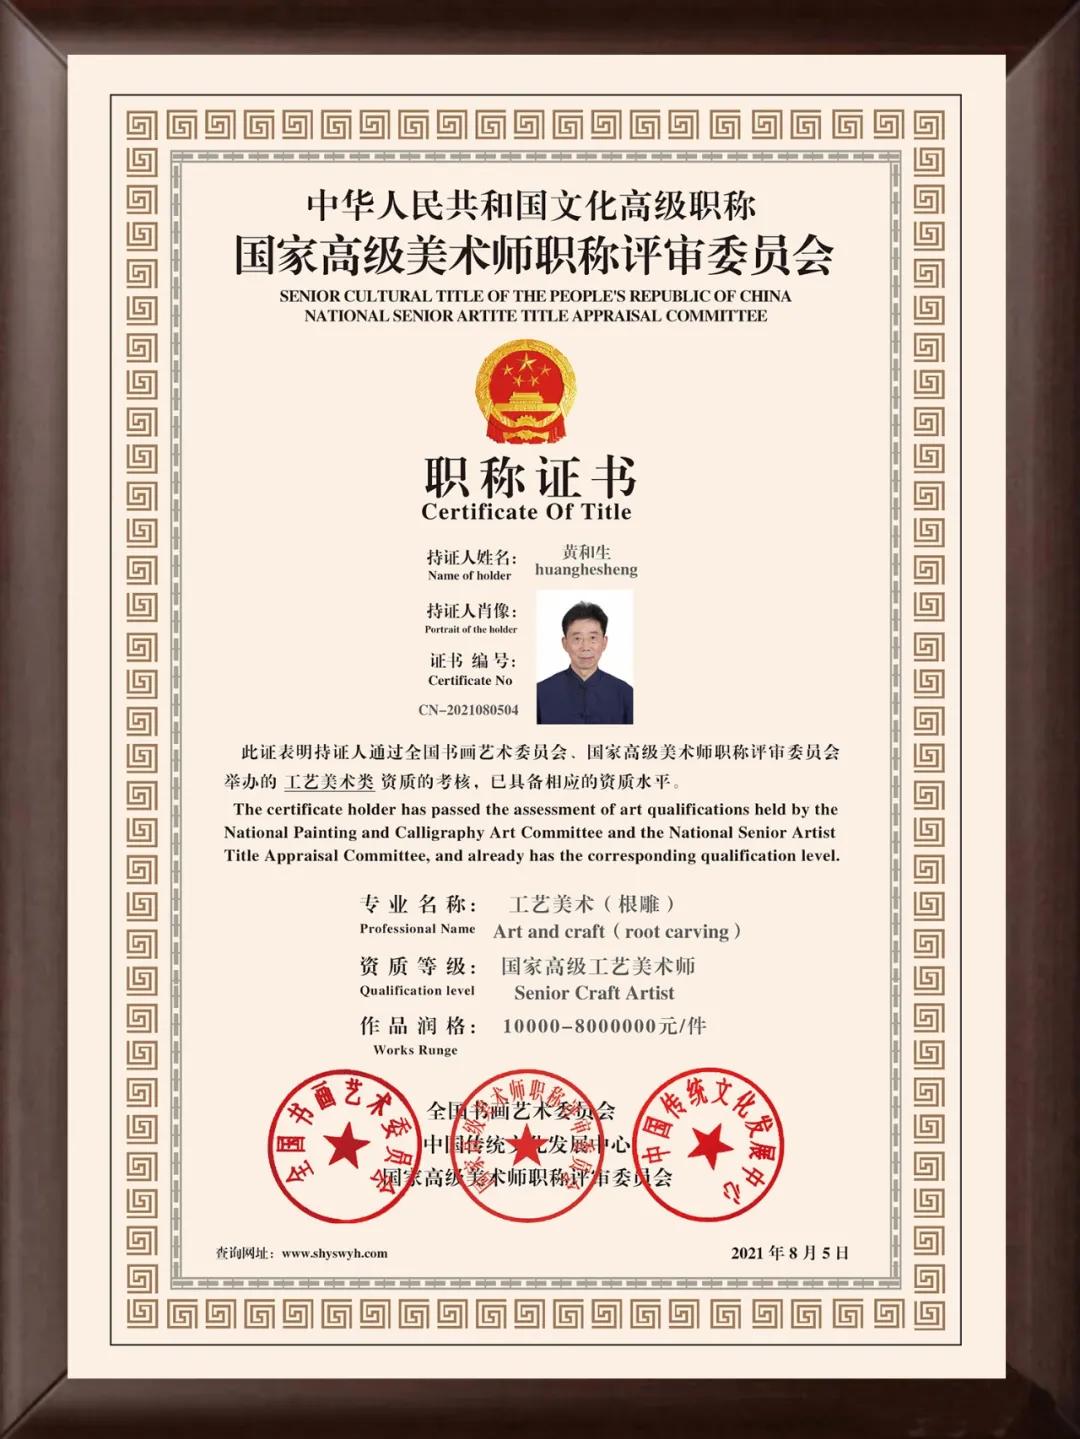 黄和生—— 中国文化高级职称国家高级工艺美术师(高级职称证书)